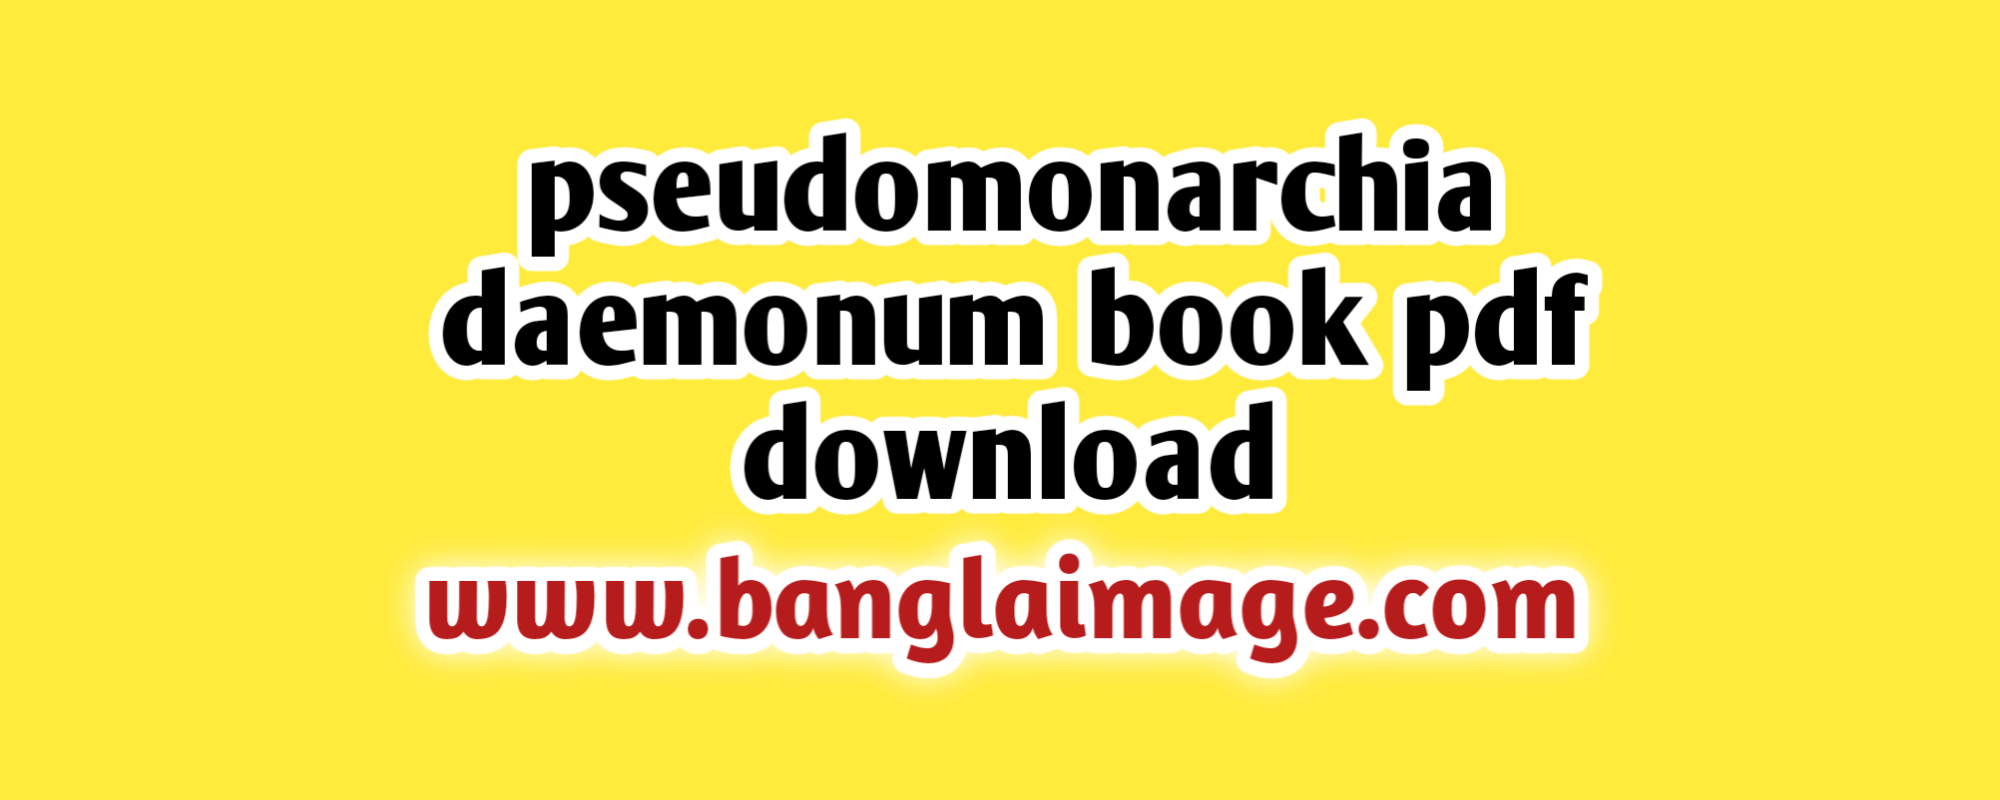 pseudomonarchia daemonum book pdf download, pseudomonarchia daemonum pdf free download, pseudomonarchia daemonum, pseudomonarchia daemonum pdf